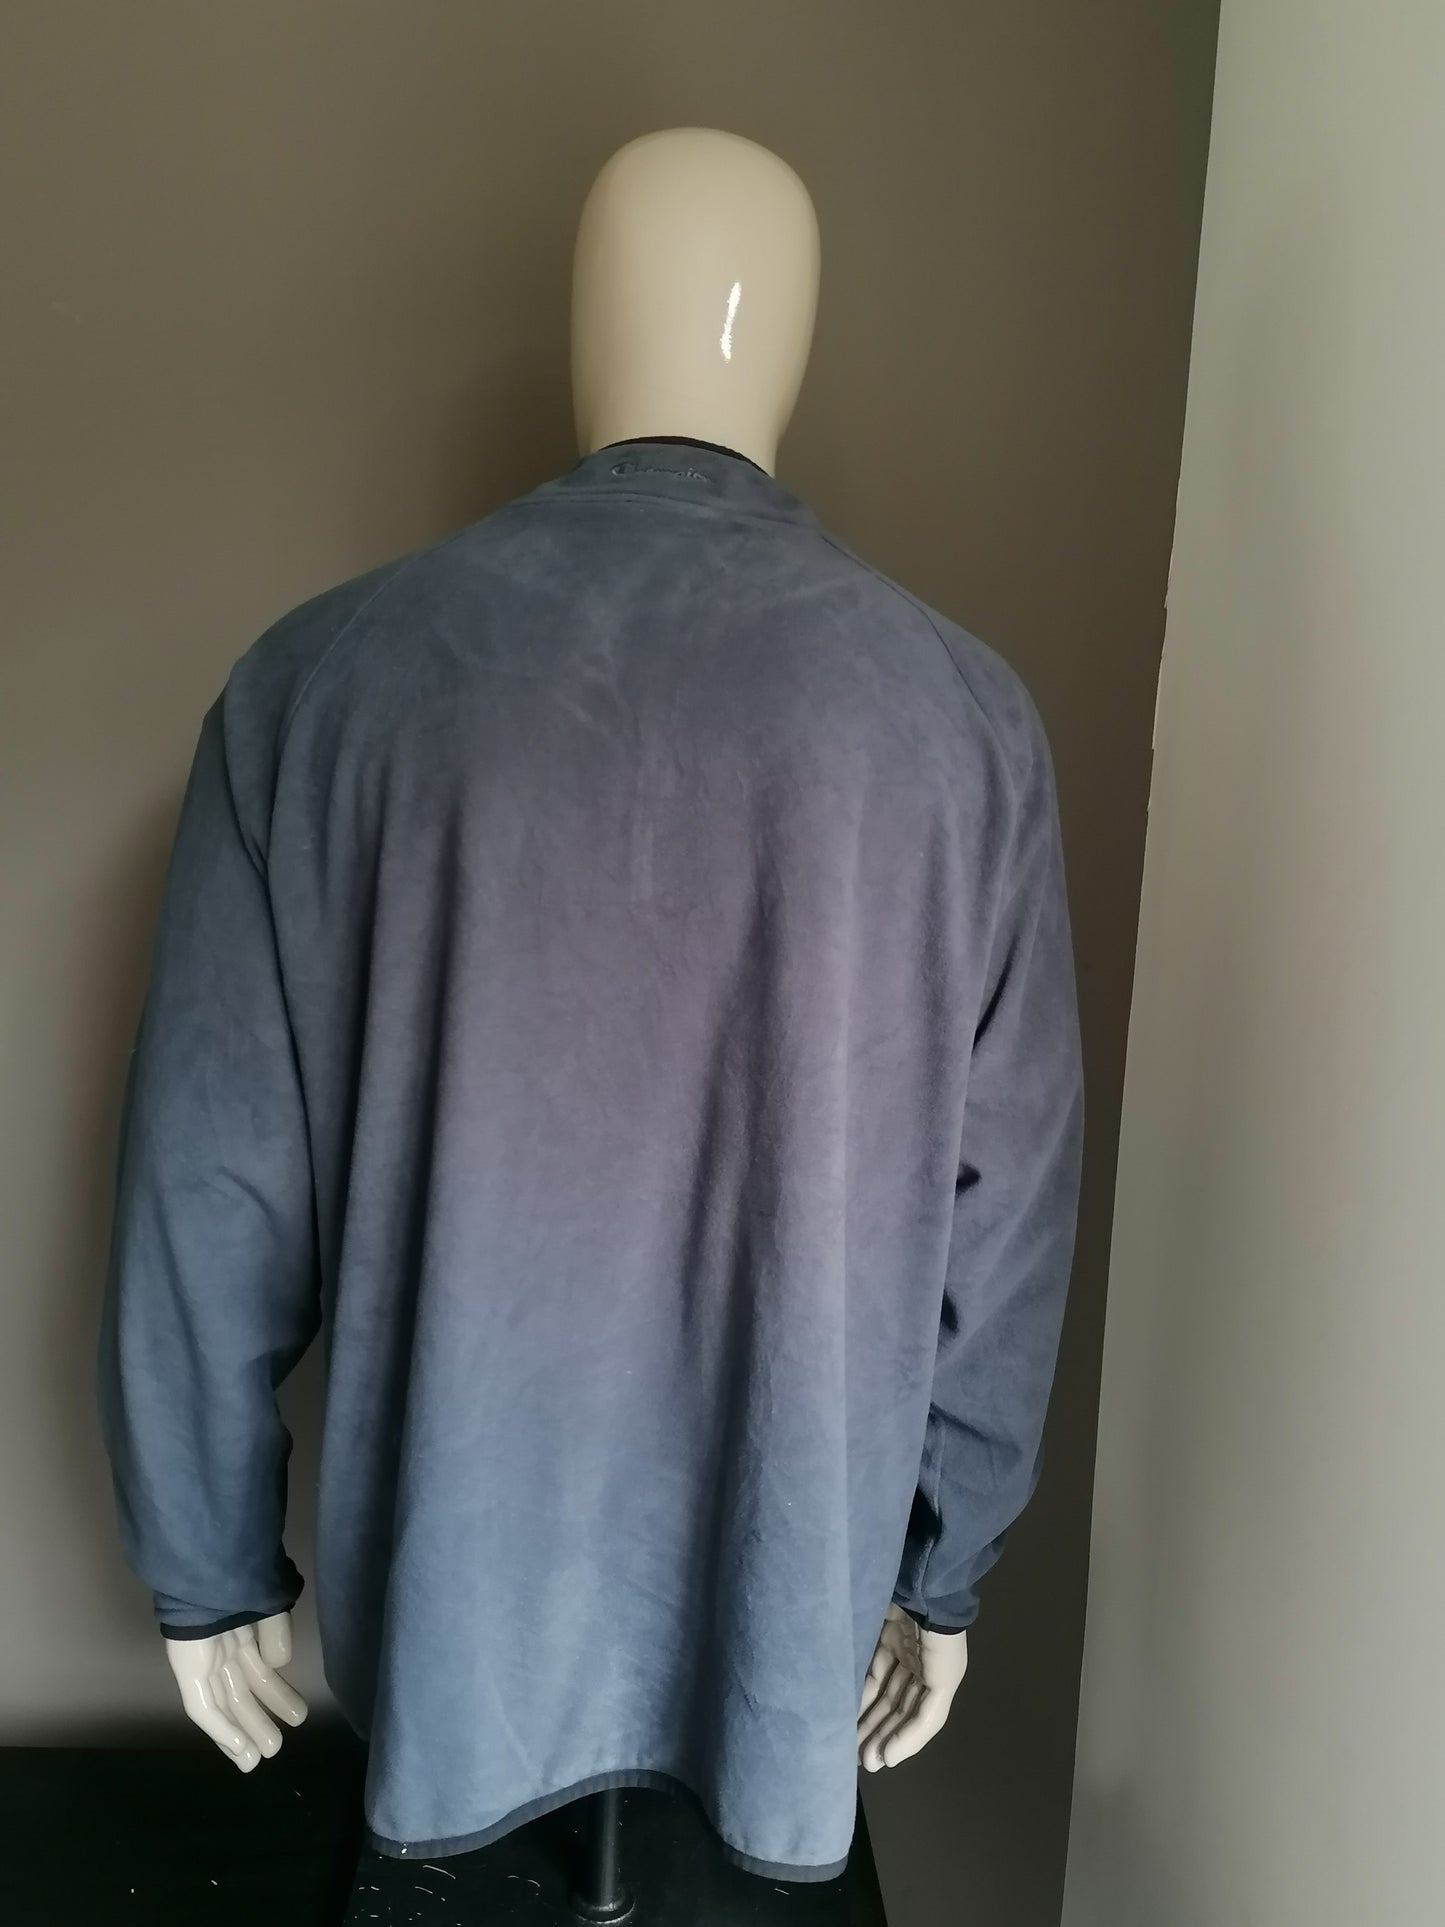 B Auswahl: Vintage Champion Vlece -Pullover mit Reißverschluss. Grau. Größe xxl. Kleines Loch vorne.